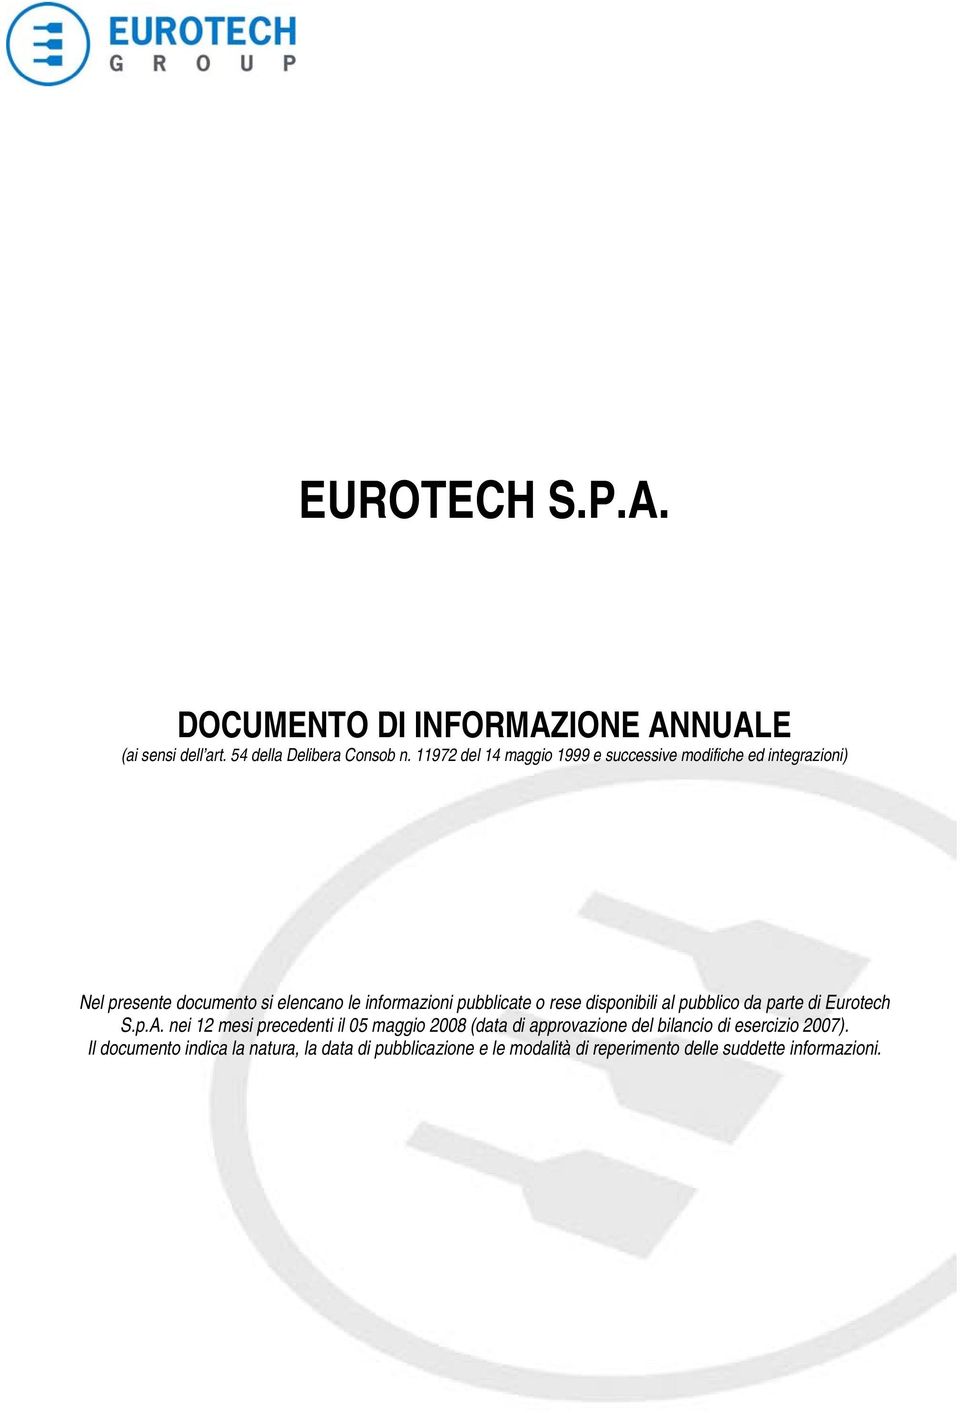 pubblicate o rese disponibili al pubblico da parte di Eurotech S.p.A.